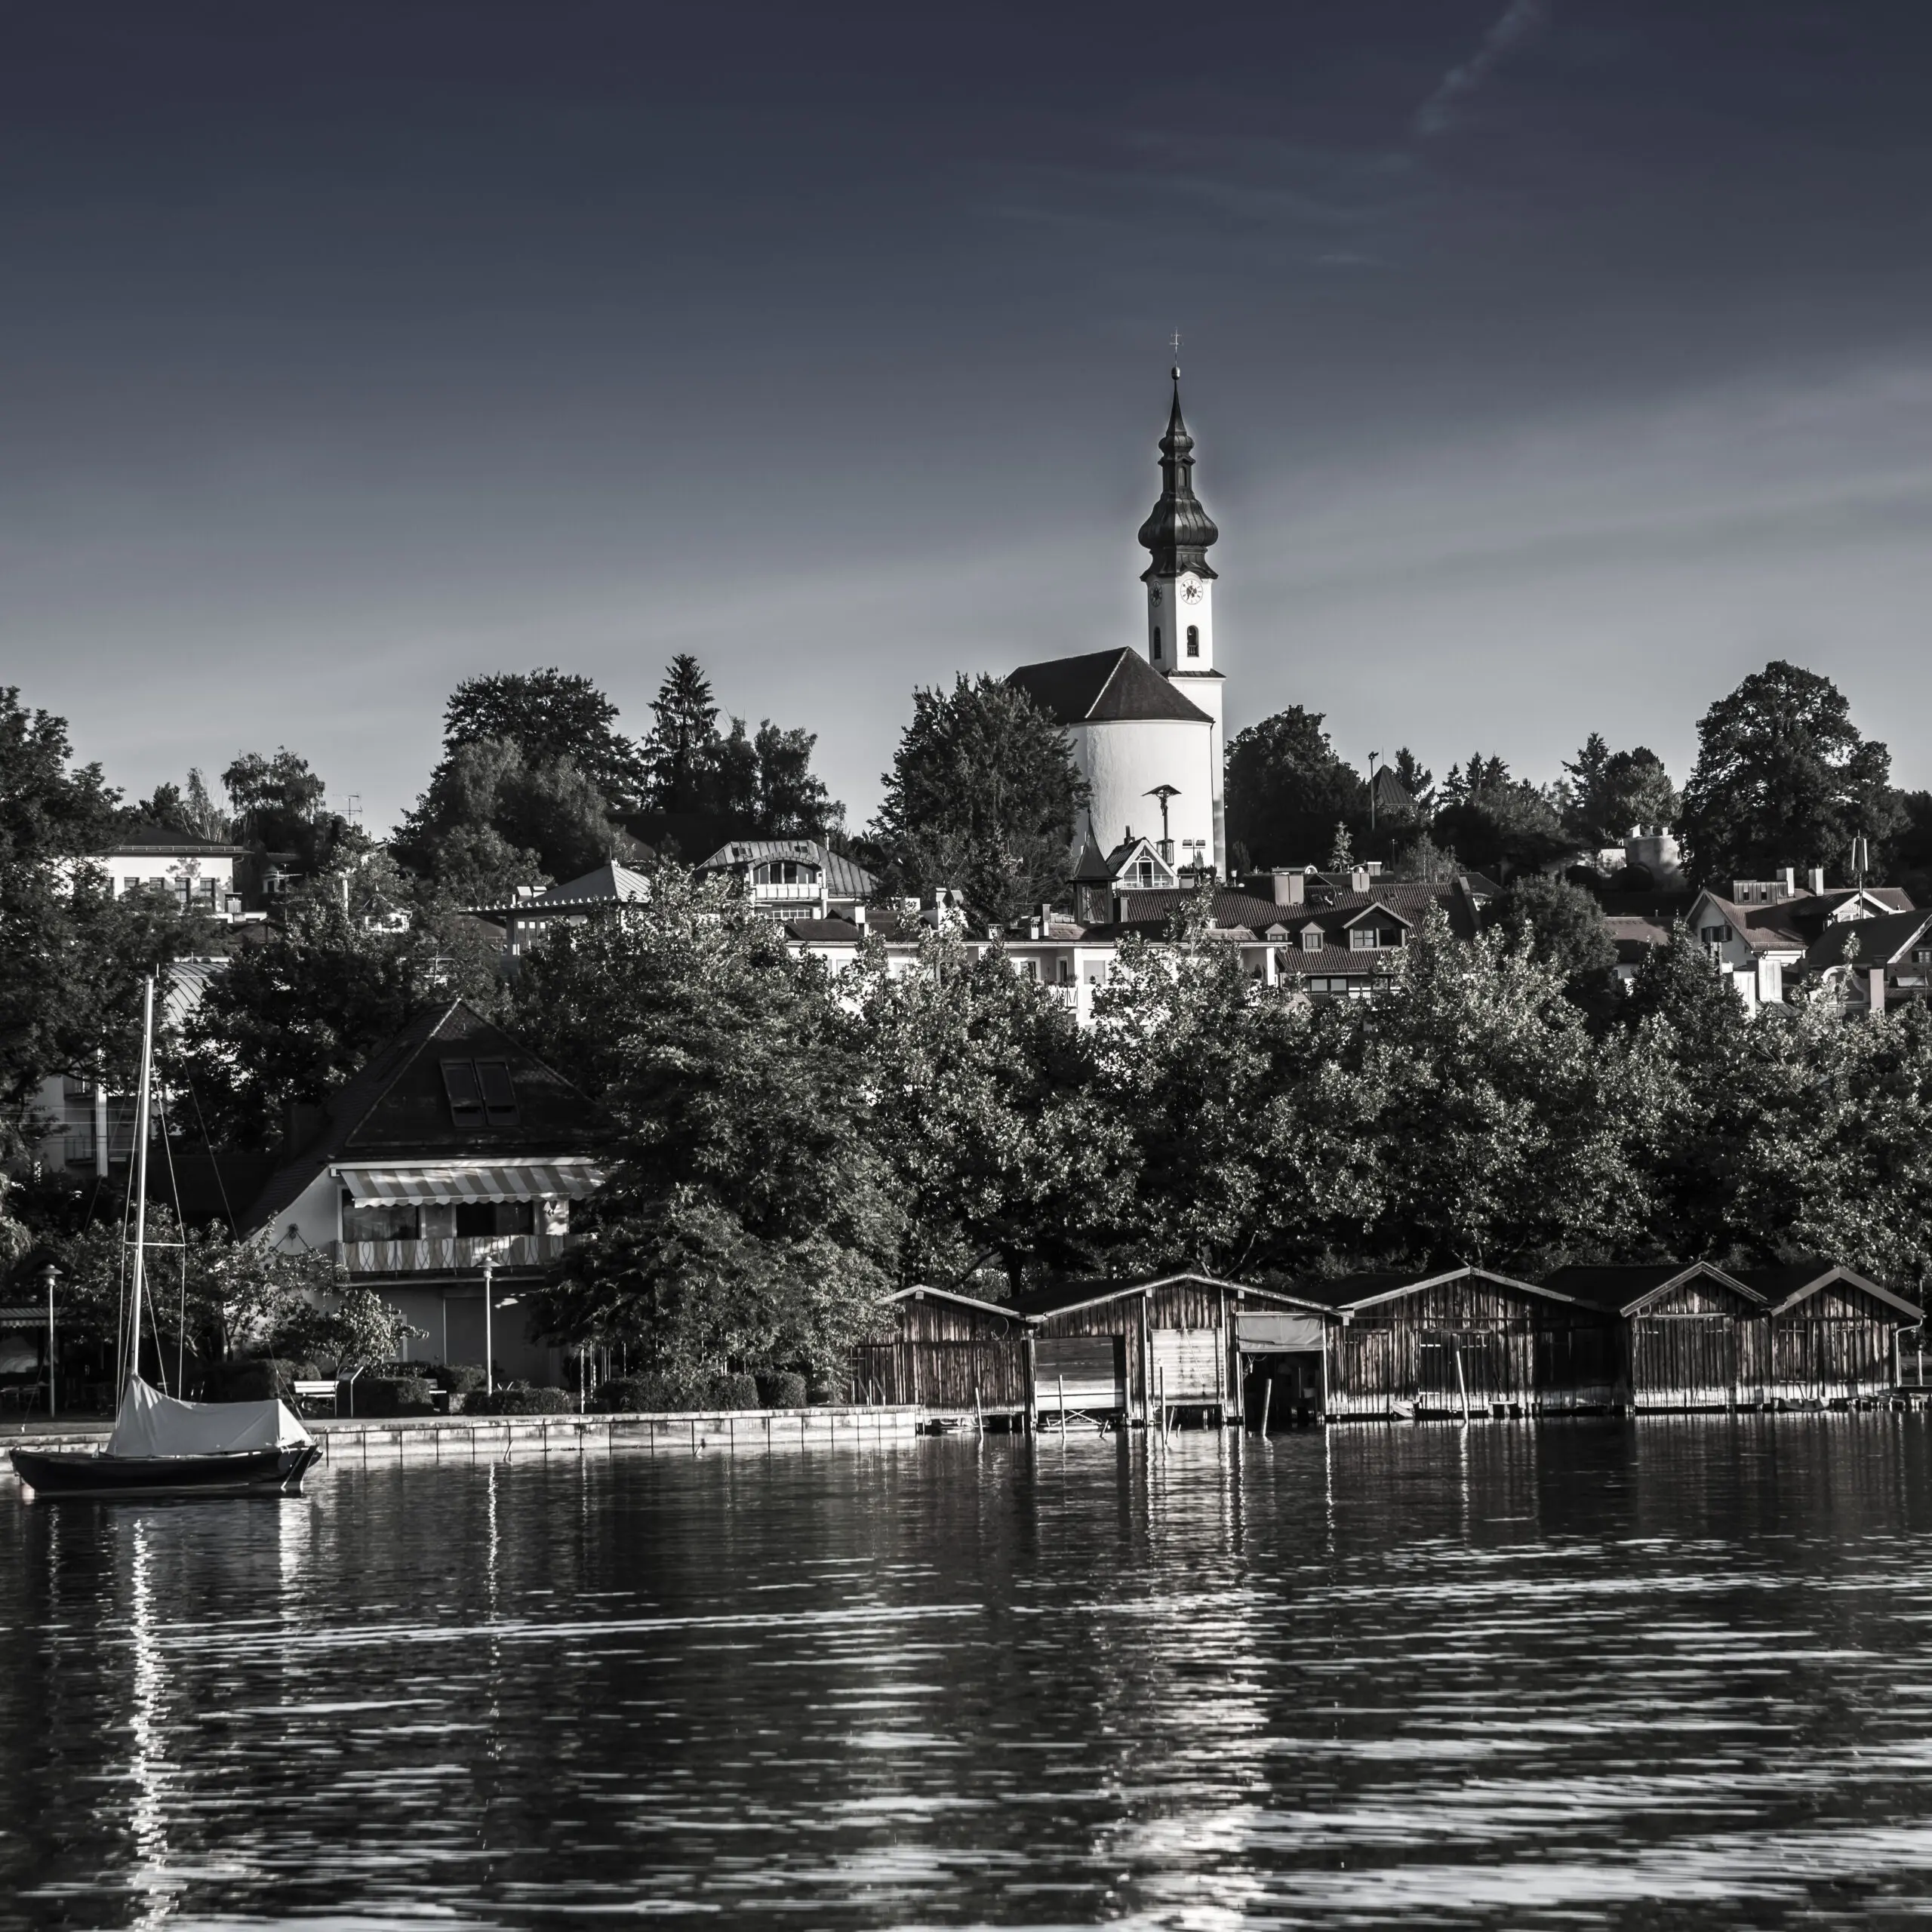 Wandbild (3650) See und St. Josef präsentiert: Architektur,Landschaften,Häuser,Sonstige Architektur,Sehenswürdigkeiten,Sommer,Gewässer